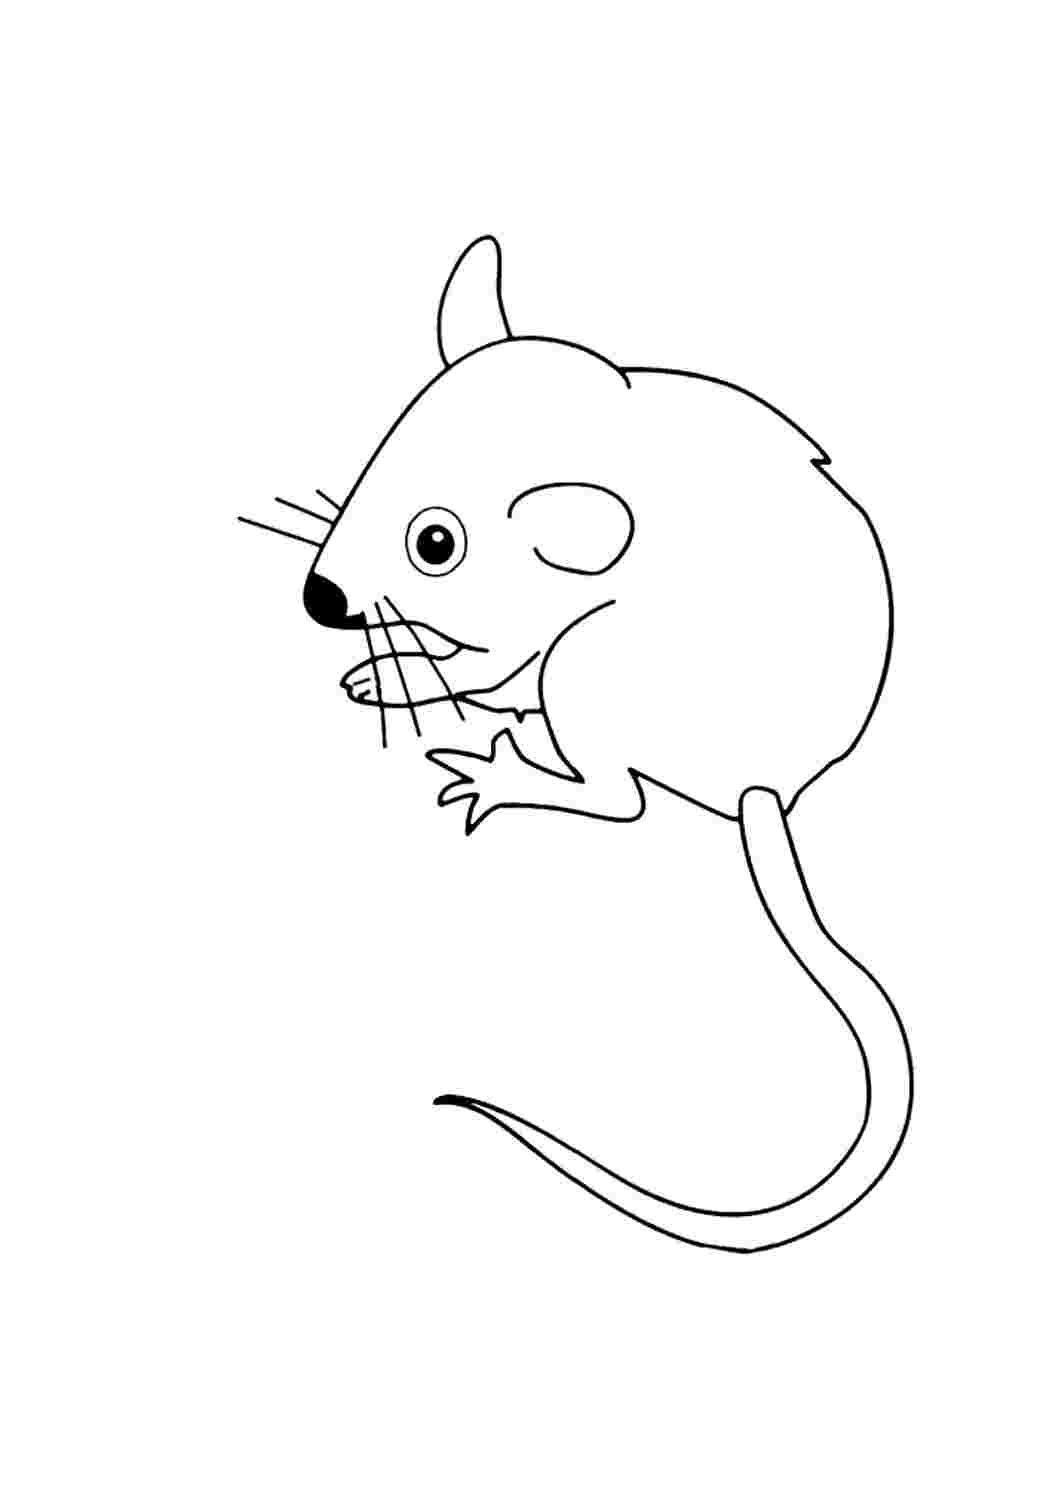 Мышка картинка для детей раскраска